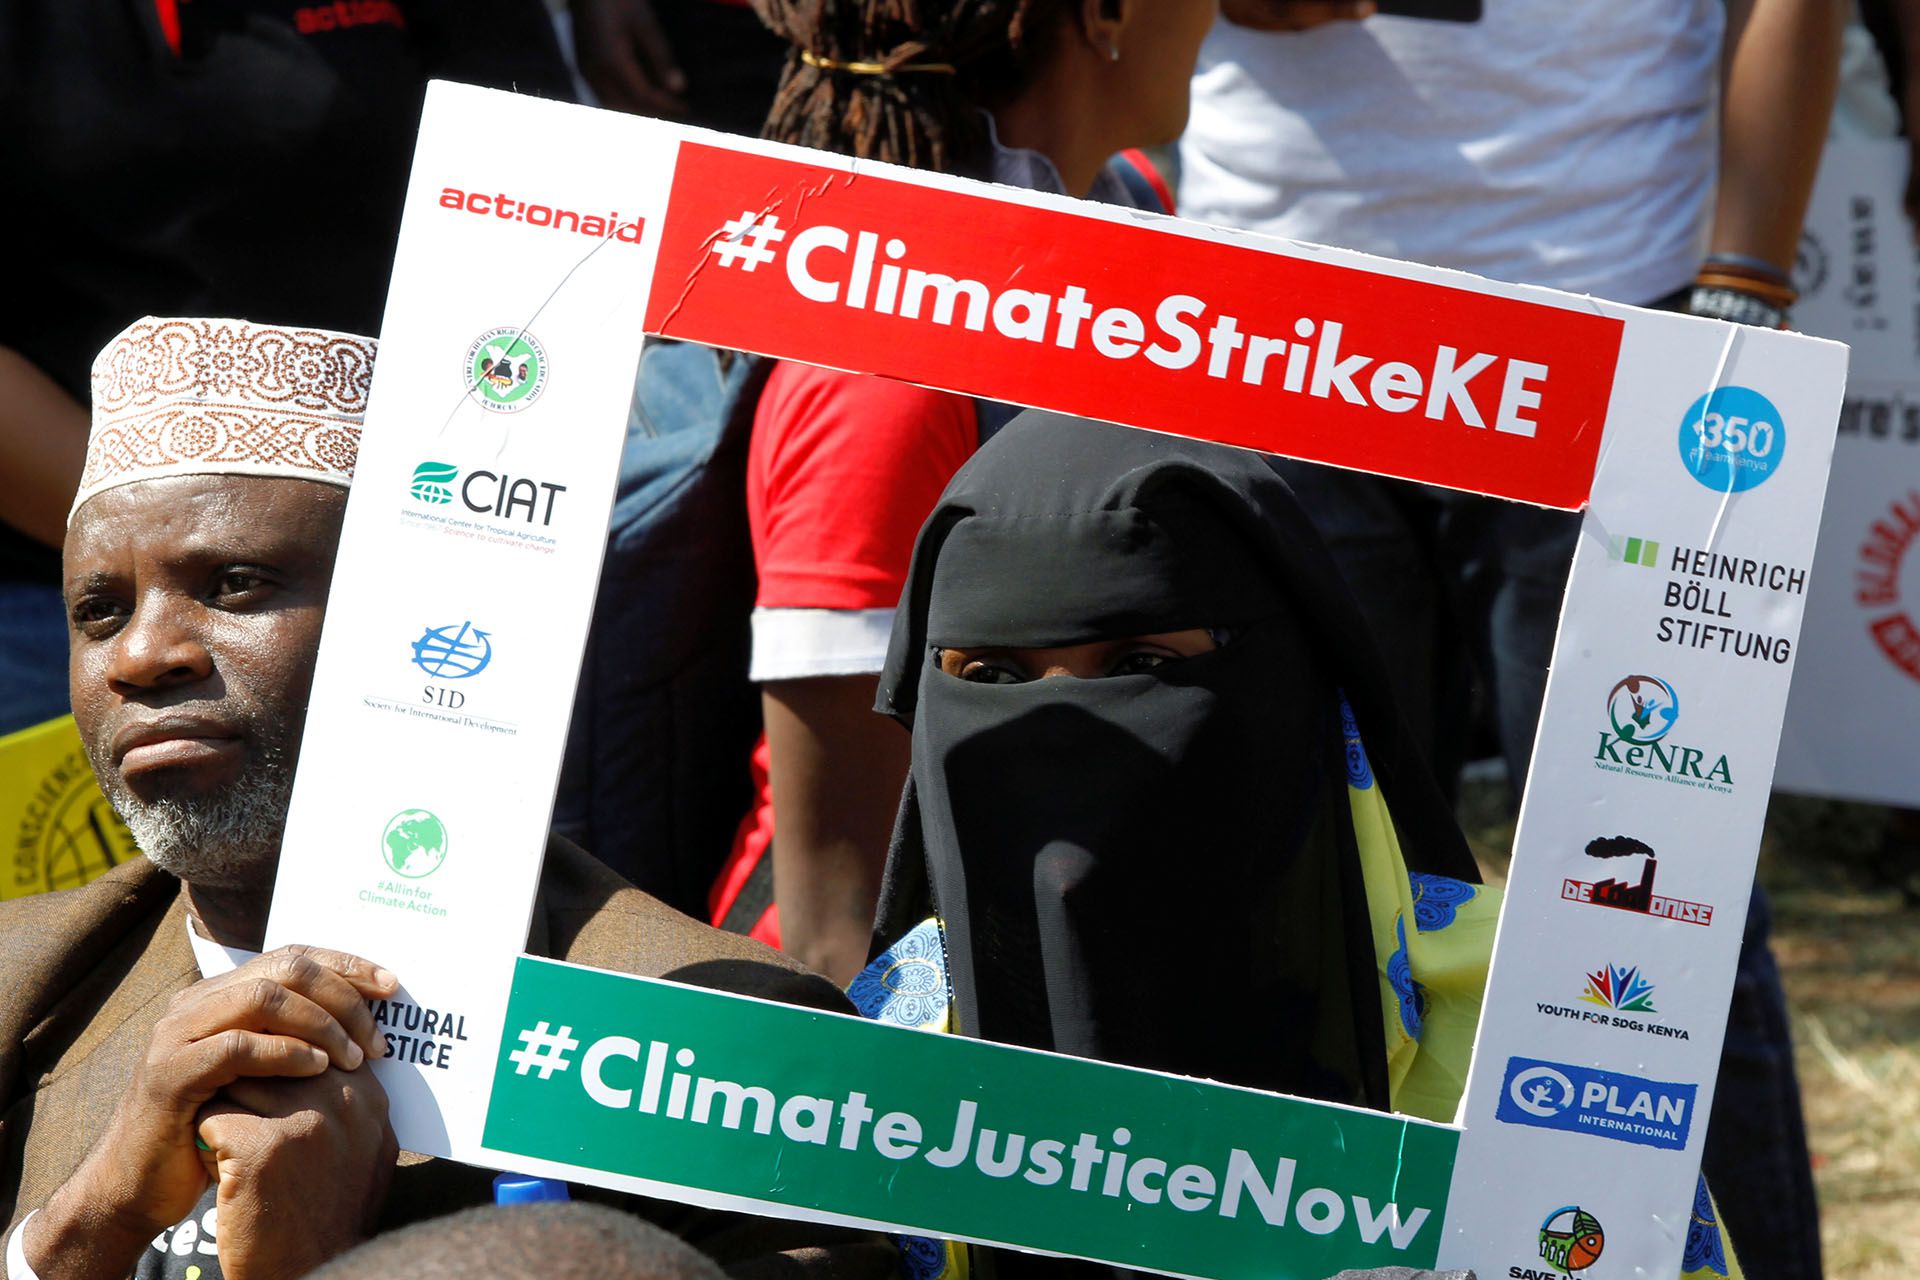 Activistas medioambientales se hacen tomar una foto en la protesta que llama a la acción sobre el cambio climático, en Nairobi, Kenia (REUTERS/Njeri Mwangi)